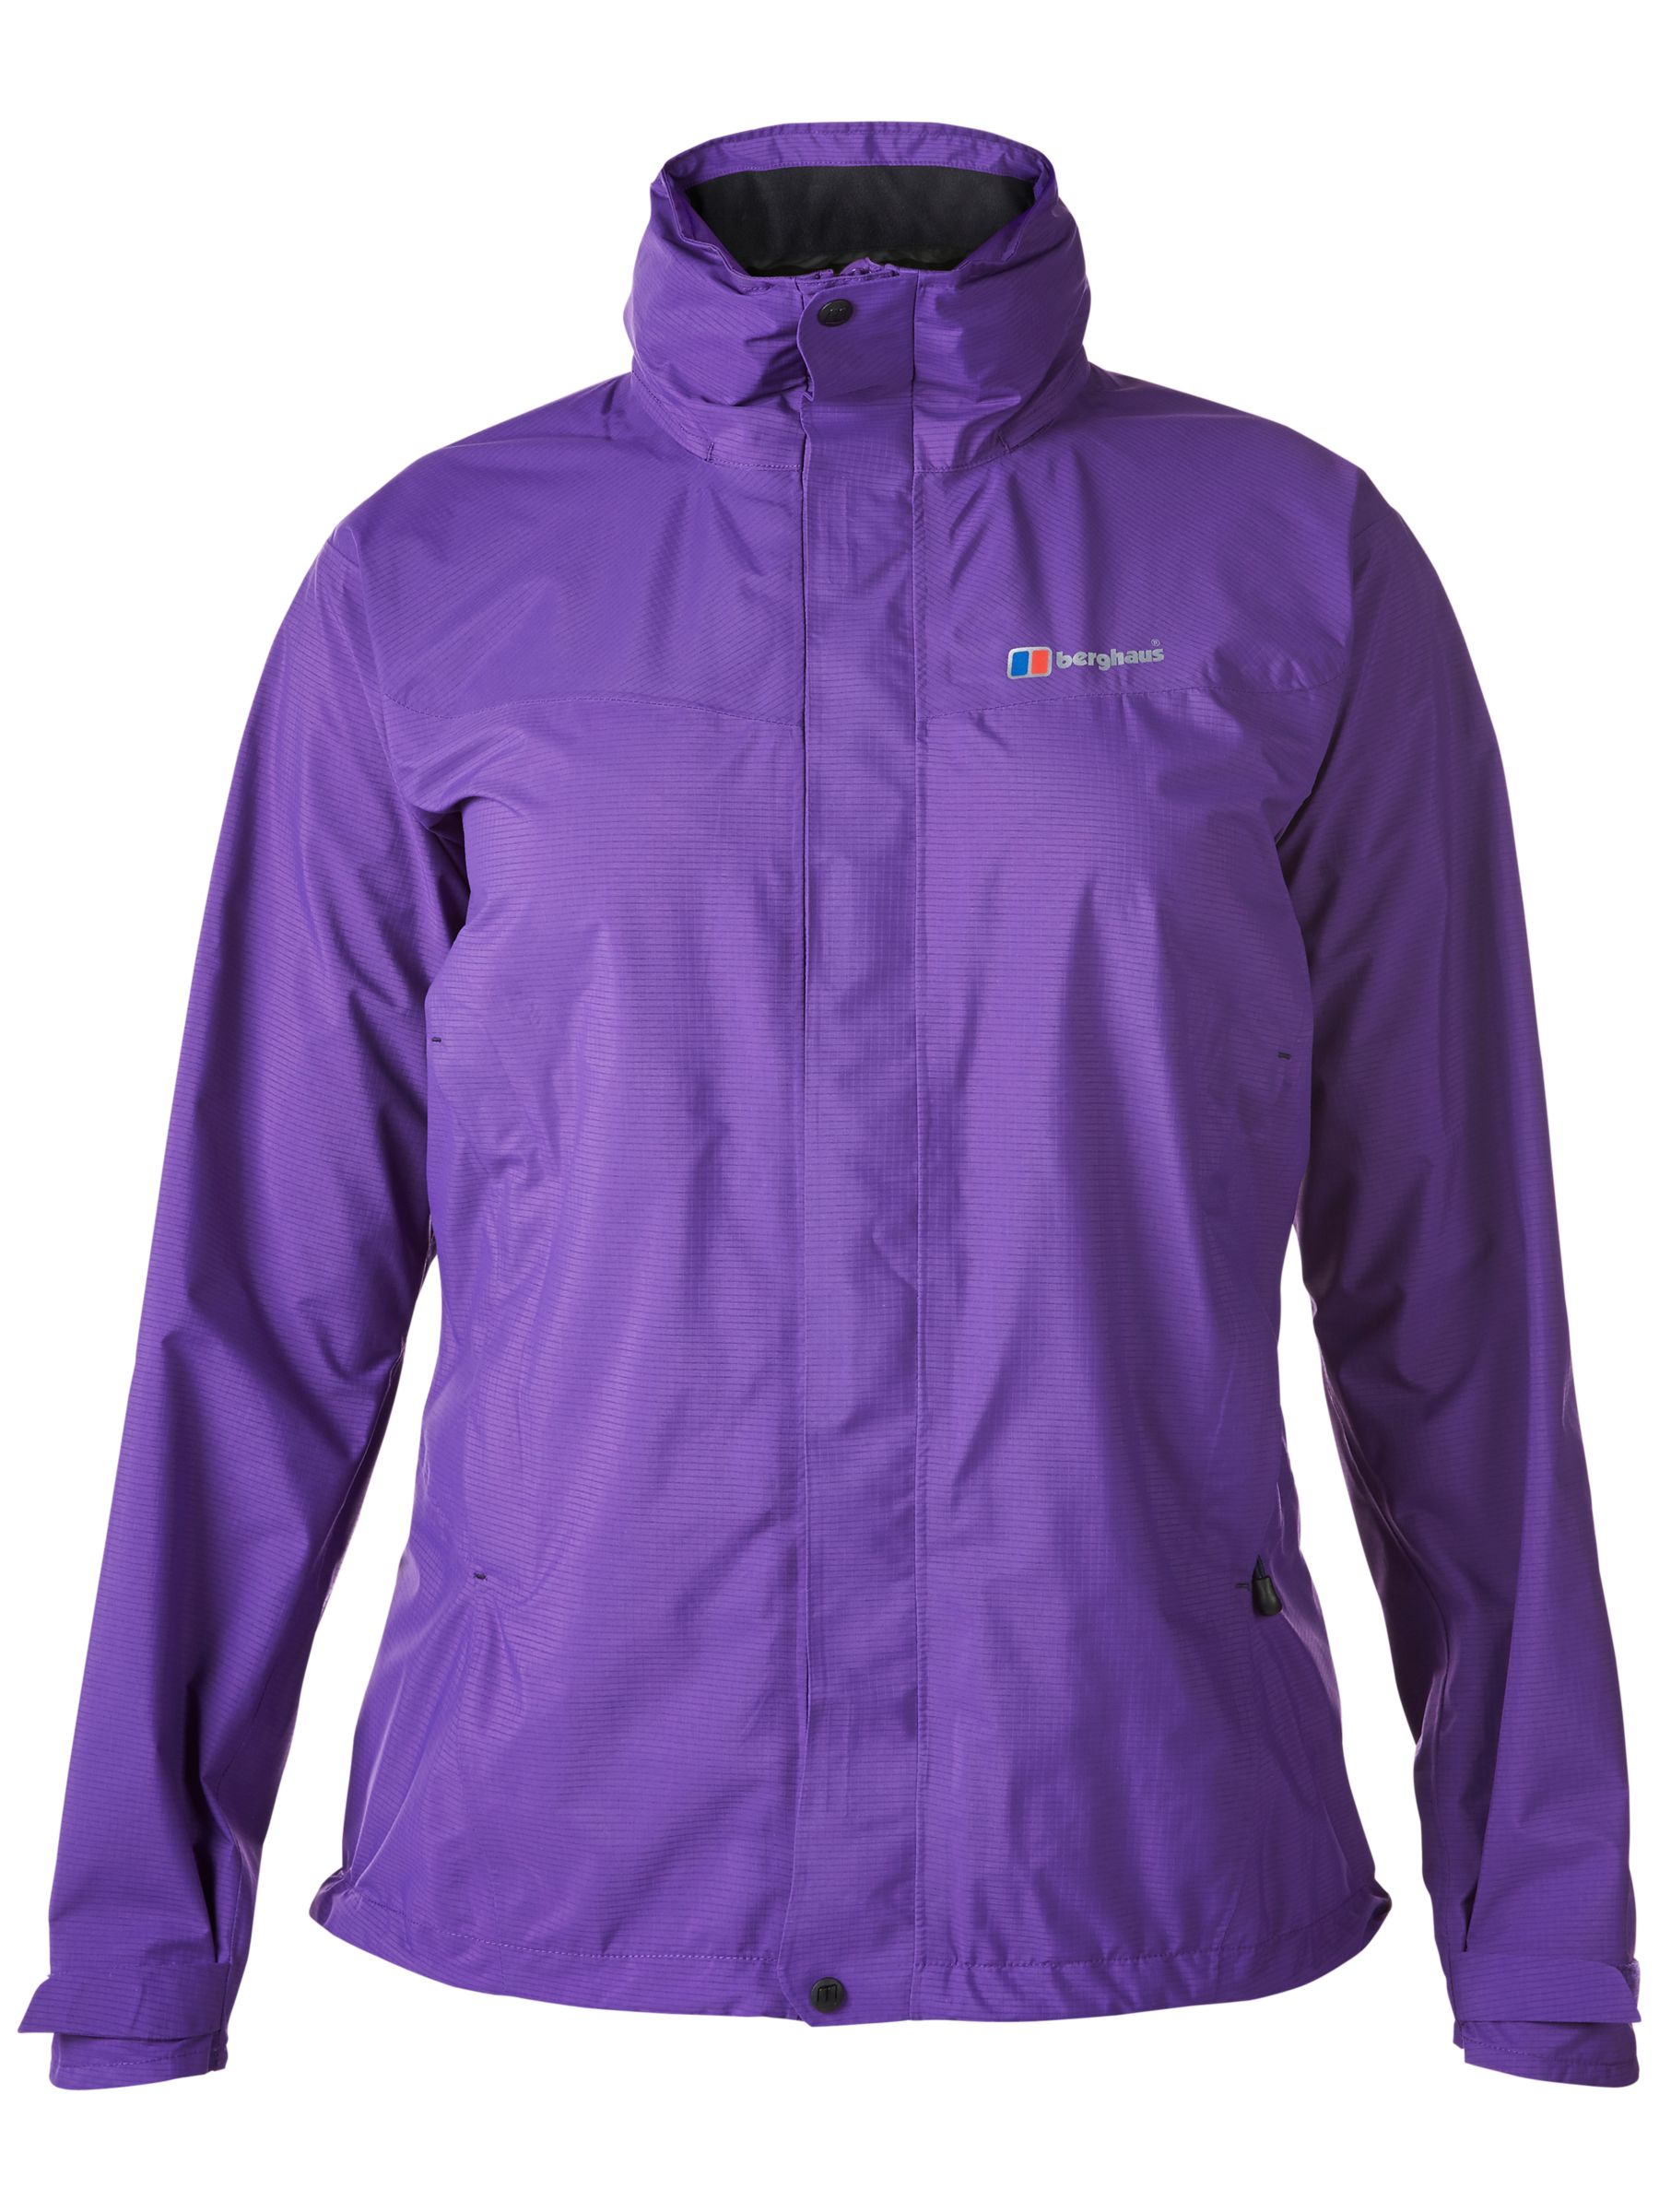 Berghaus Light Hike Waterproof Women's Jacket, Purple at John Lewis ...